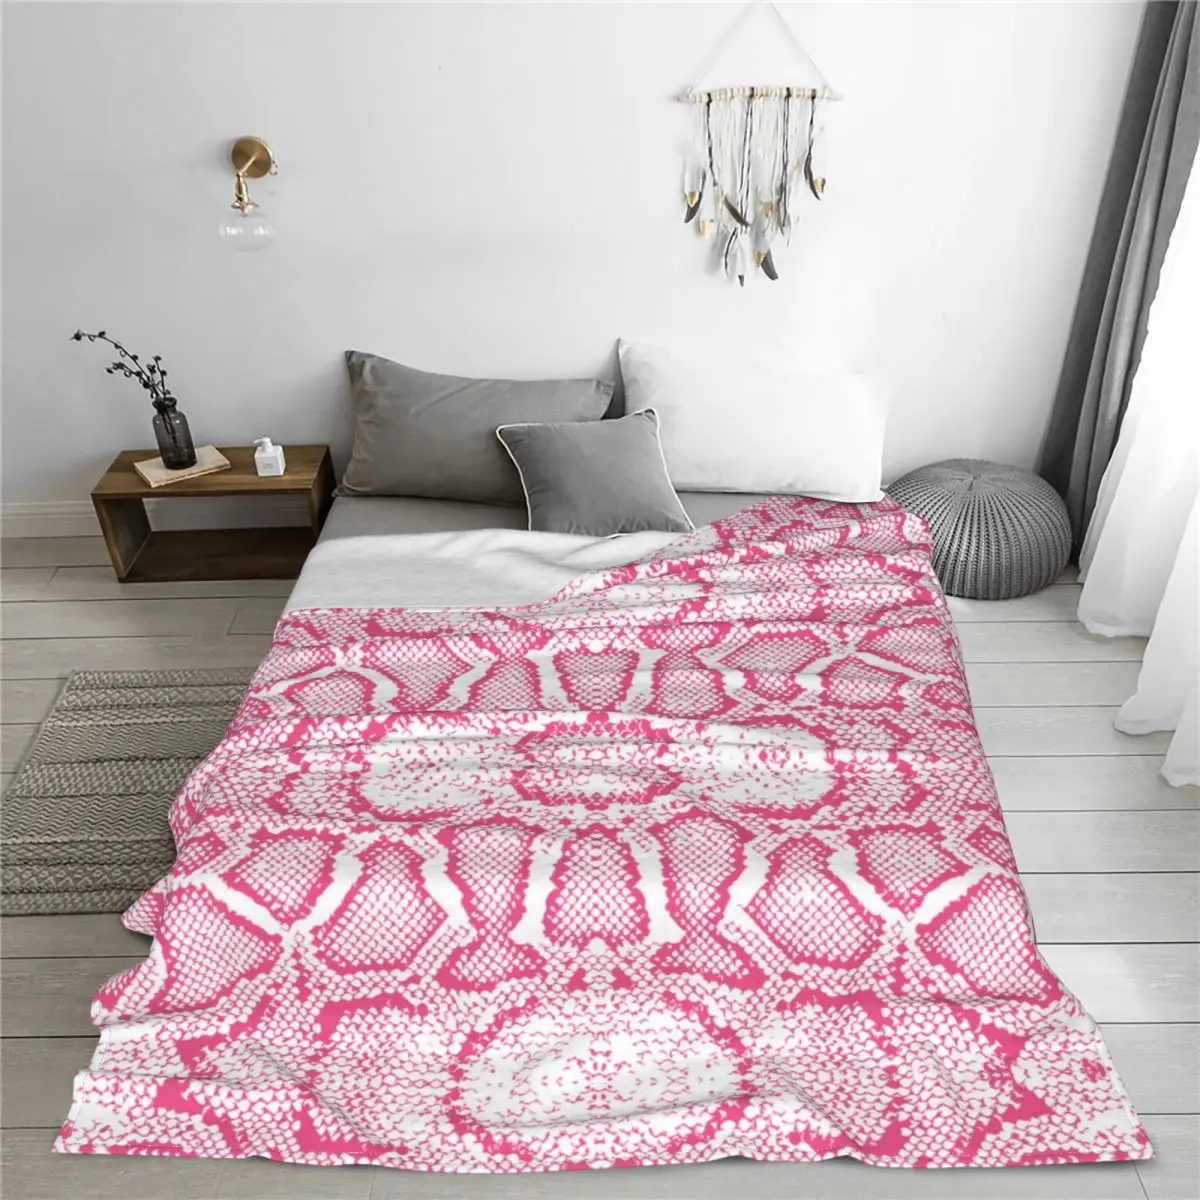  Одеяло с рисунком змеиной кожи Фланелевое зимнее многофункциональное легкое тонкое одеяло для постельных принадлежностей Автомобильные покрывала